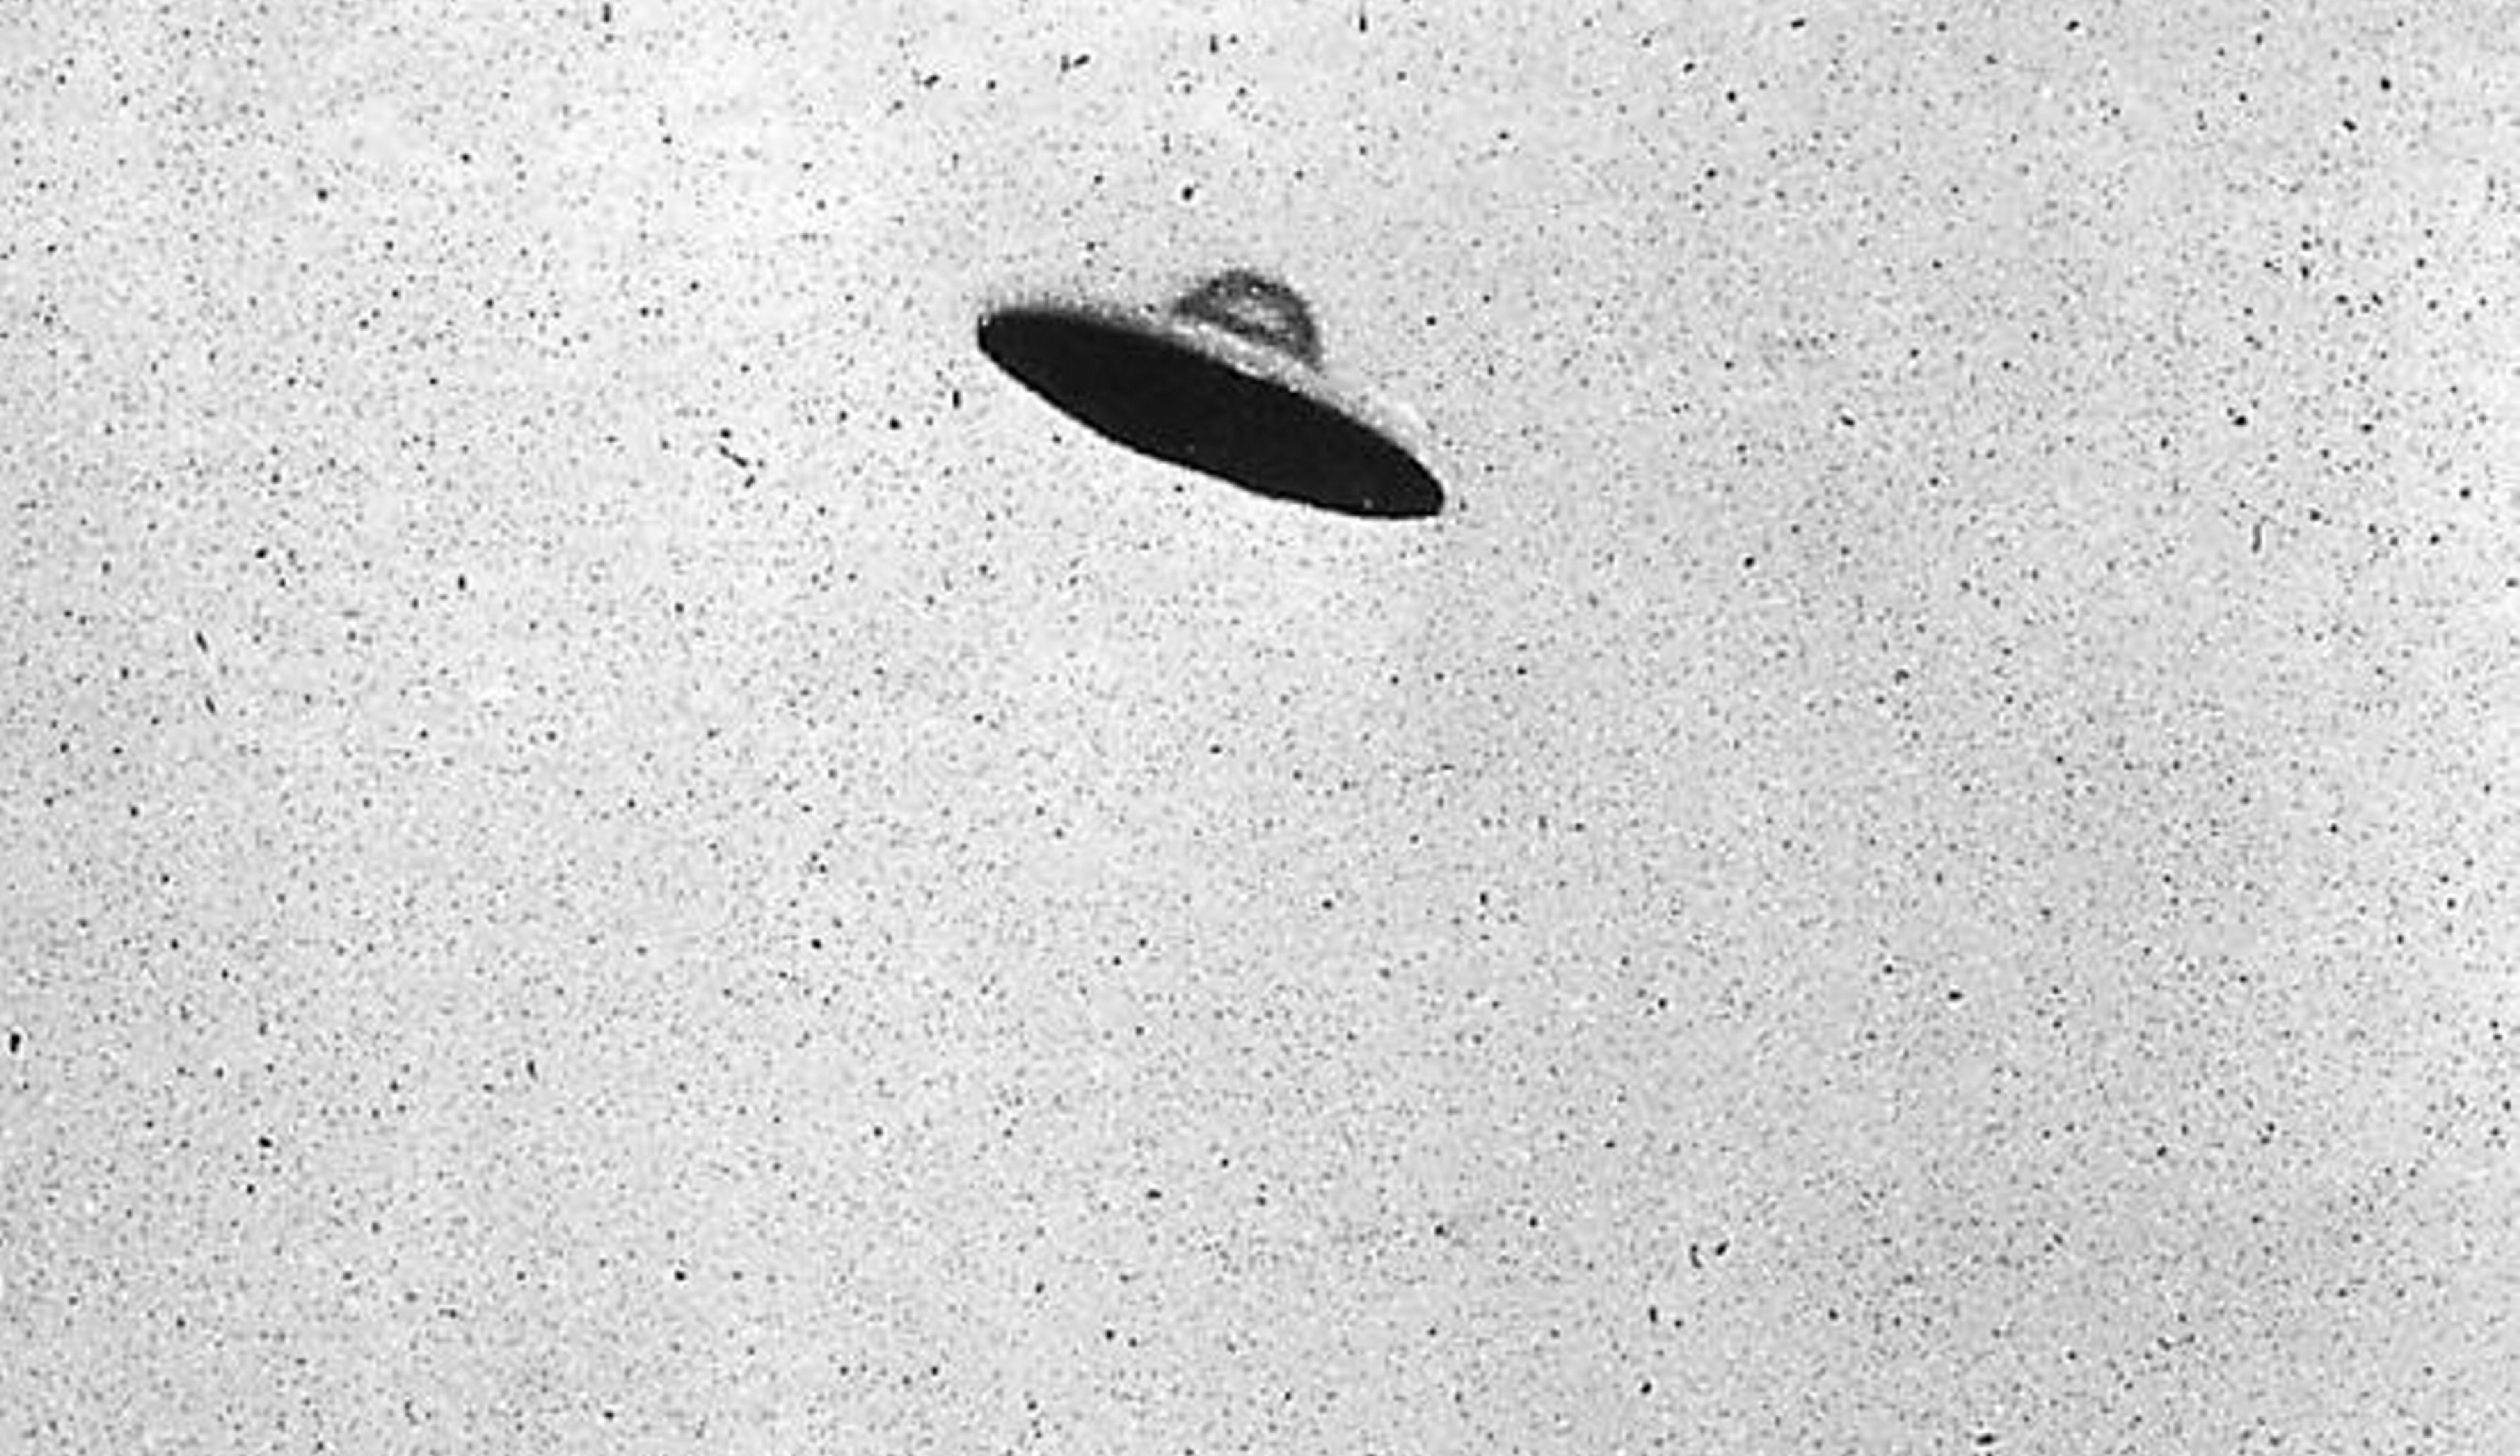 Une soucoupe volante présumée vue au-dessus de Passaic, New Jersey en 1952. Domaine public.